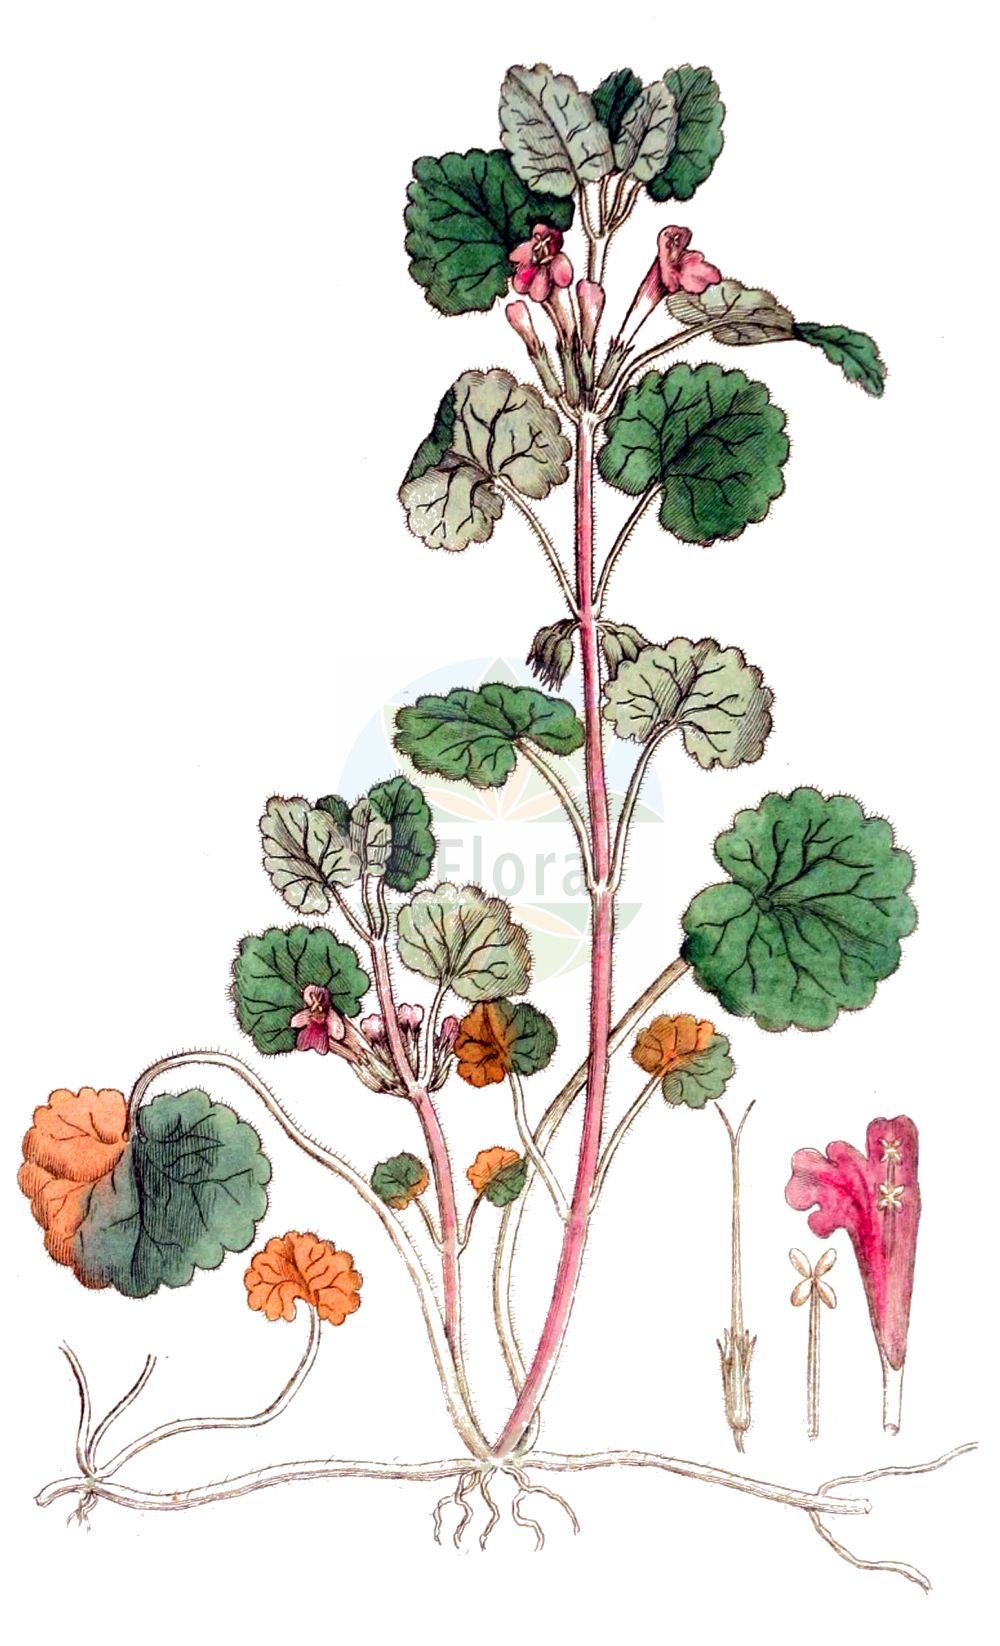 Historische Abbildung von Glechoma hederacea (Echte Gundelrebe - Ground-ivy). Das Bild zeigt Blatt, Bluete, Frucht und Same. ---- Historical Drawing of Glechoma hederacea (Echte Gundelrebe - Ground-ivy). The image is showing leaf, flower, fruit and seed.(Glechoma hederacea,Echte Gundelrebe,Ground-ivy,Calamintha hederacea,Chamaecissos hederaceus,Chamaeclema hederacea,Glechoma borealis,Glechoma bulgarica,Glechoma hederacea,Glechoma heterophylla,Glechoma intermedia,Glechoma lobulata,Glechoma longicaulis,Glechoma magna,Glechoma micrantha,Glechoma repens,Glechoma rigida,Glechoma rotundifolia,Glechoma serbica,Glechonion hederaceum,Hedera terrestris,Nepeta glechoma,Nepeta hederacea,Nepeta rigida,Echte Gundelrebe,Haarige Gundelrebe,Ground-ivy,Creeping Charlie,Gill-over-The-Ground,Glechoma,Gundermann,Ground-ivy,Lamiaceae,Lippenblütengewächse,Nettle family,Blatt,Bluete,Frucht,Same,leaf,flower,fruit,seed,Svensk Botanik (Svensk Botanik))